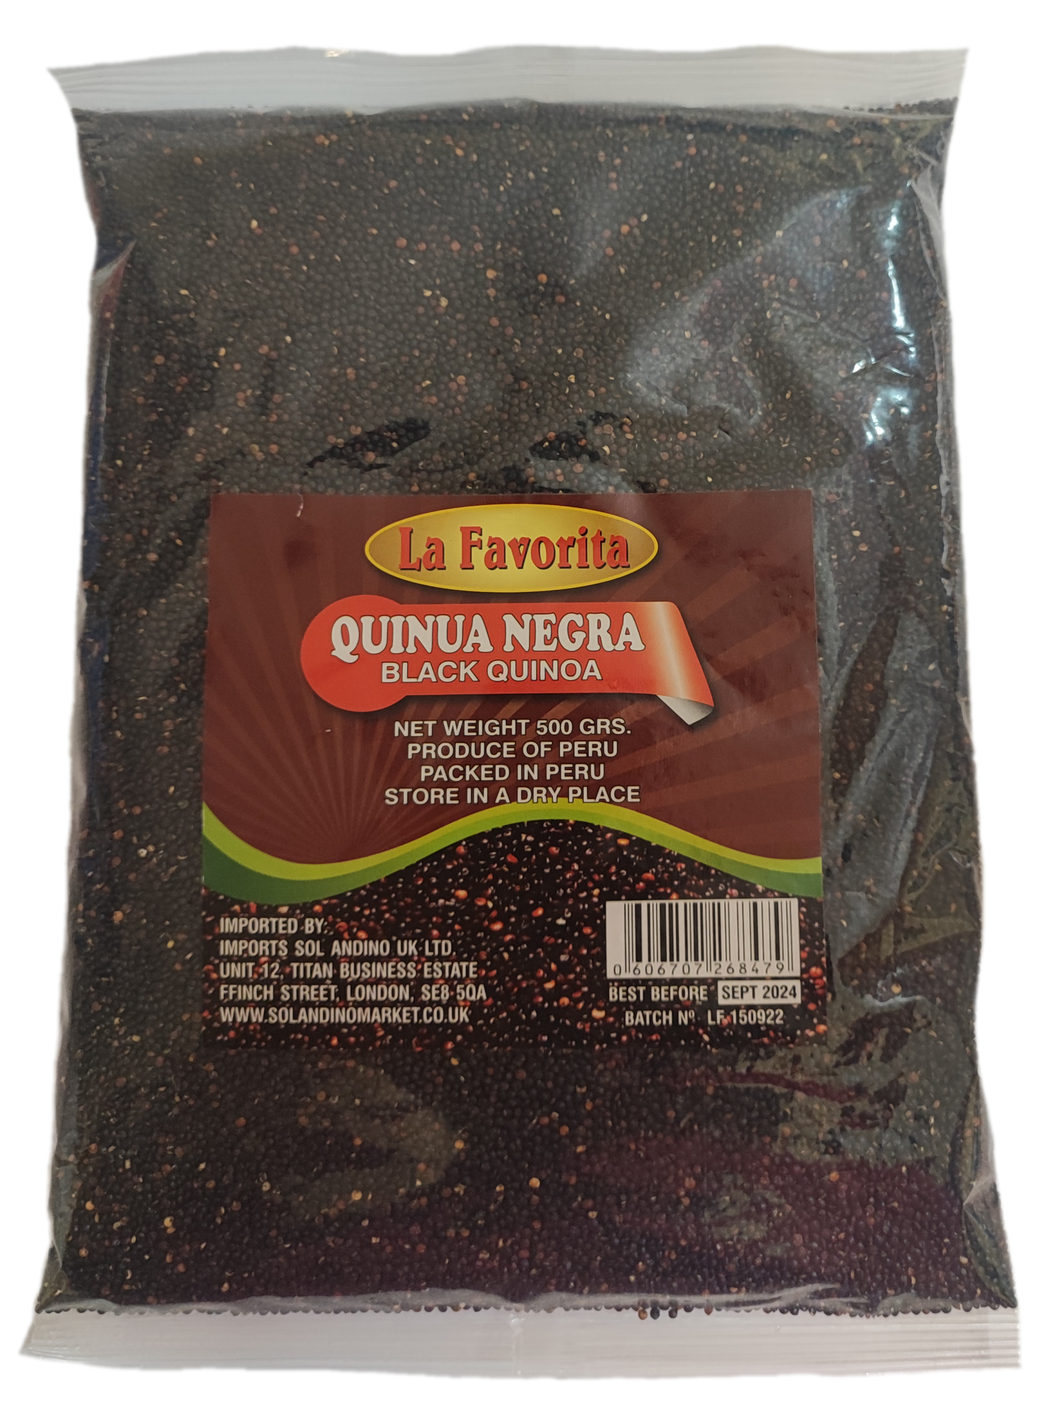 La Favorita Black Quinoa 500g